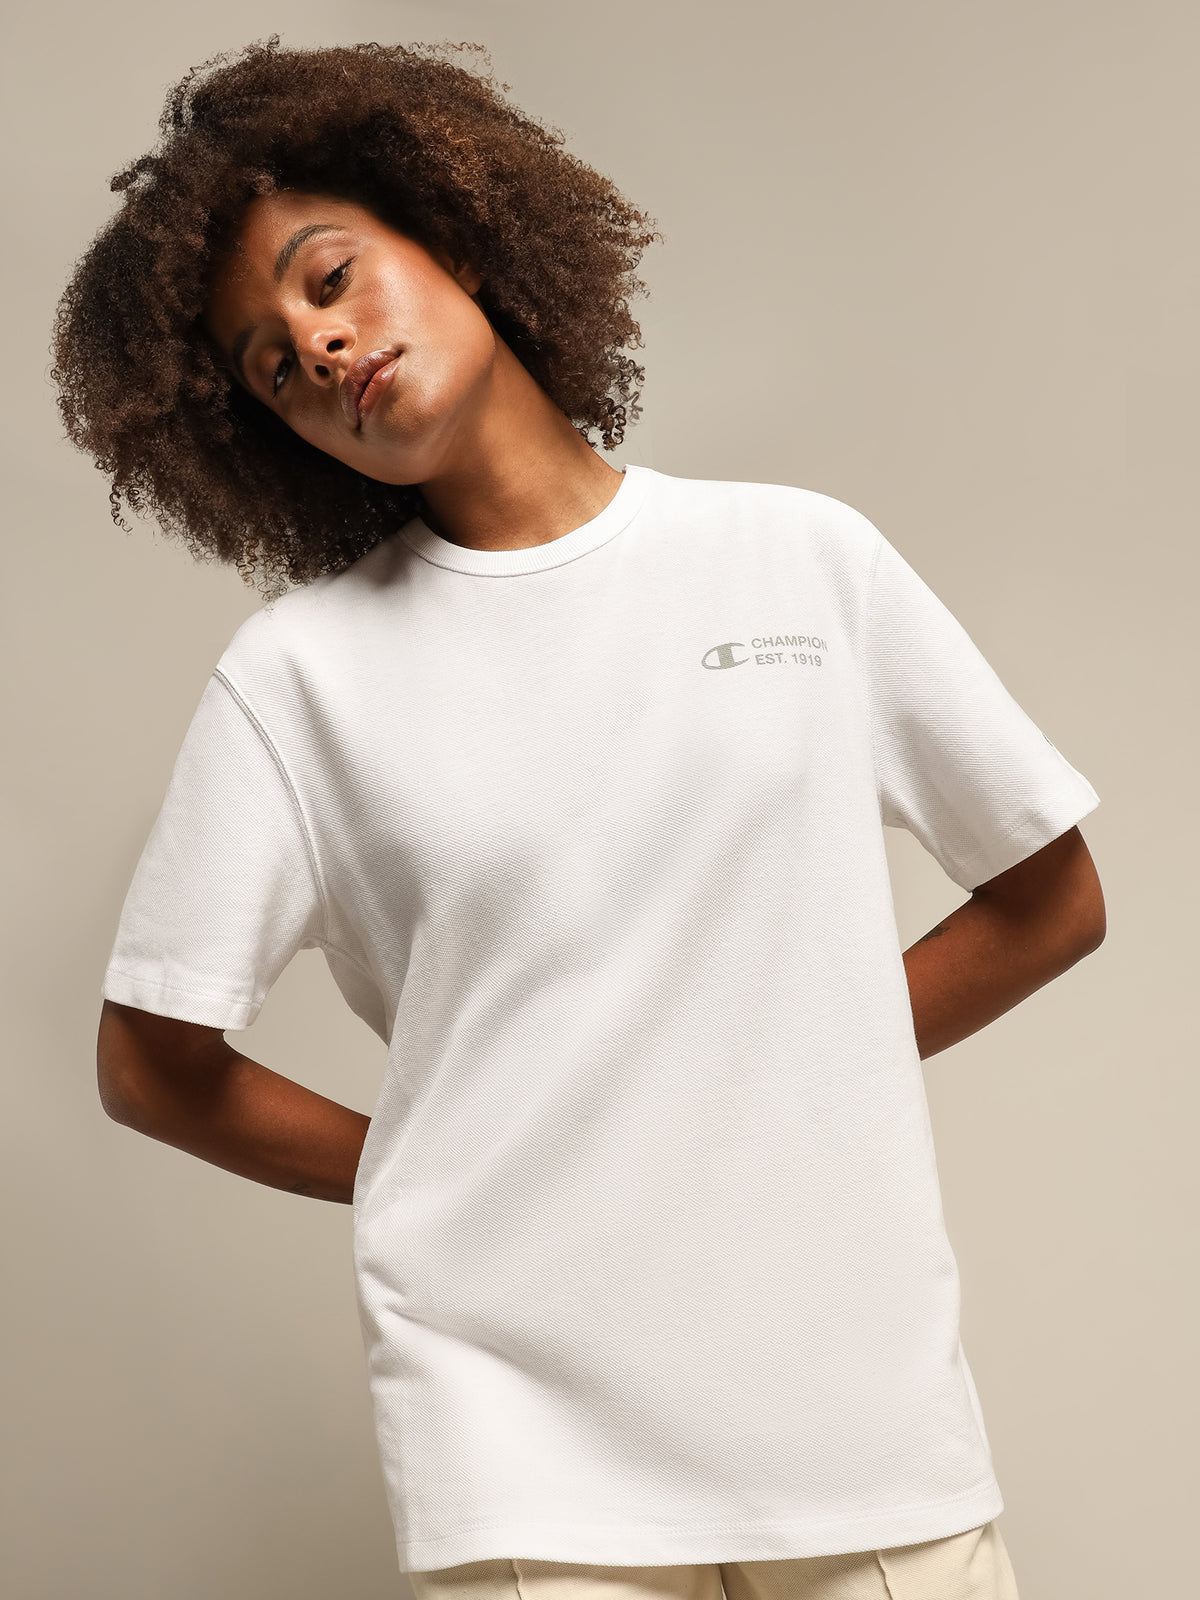 Re:bound Pique T-Shirt in White